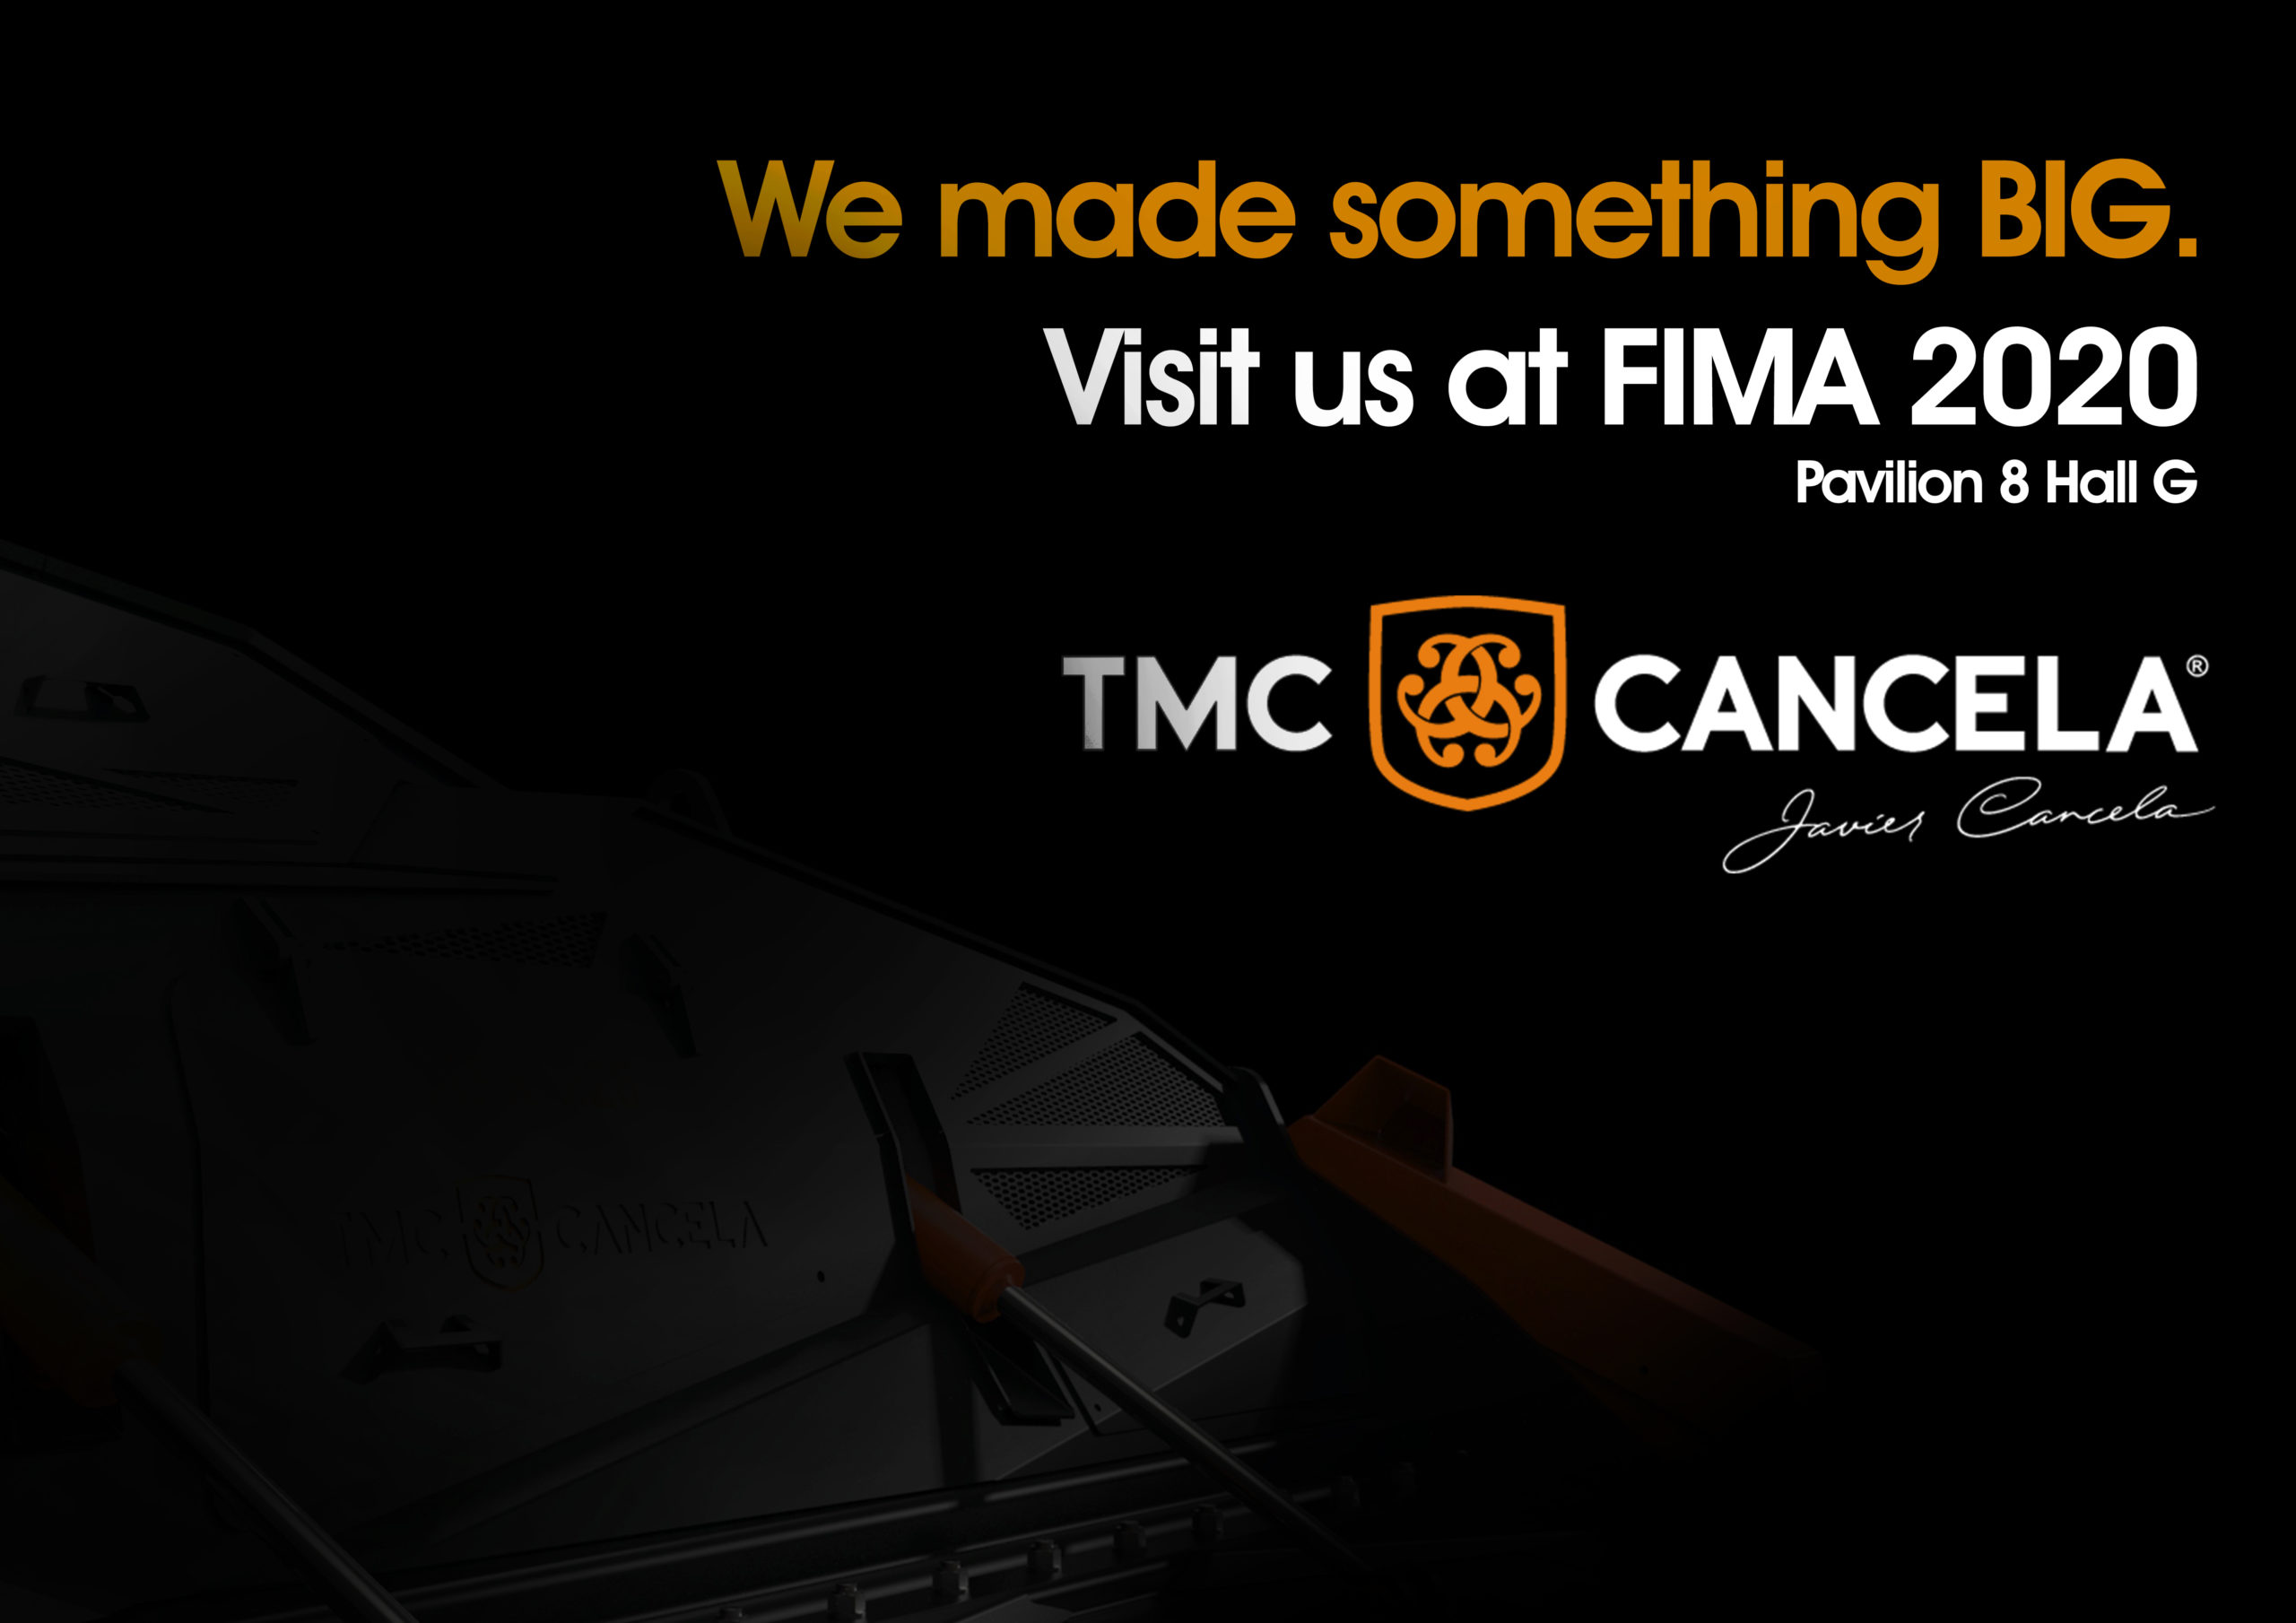 TMC CANCELA FIMA 2020